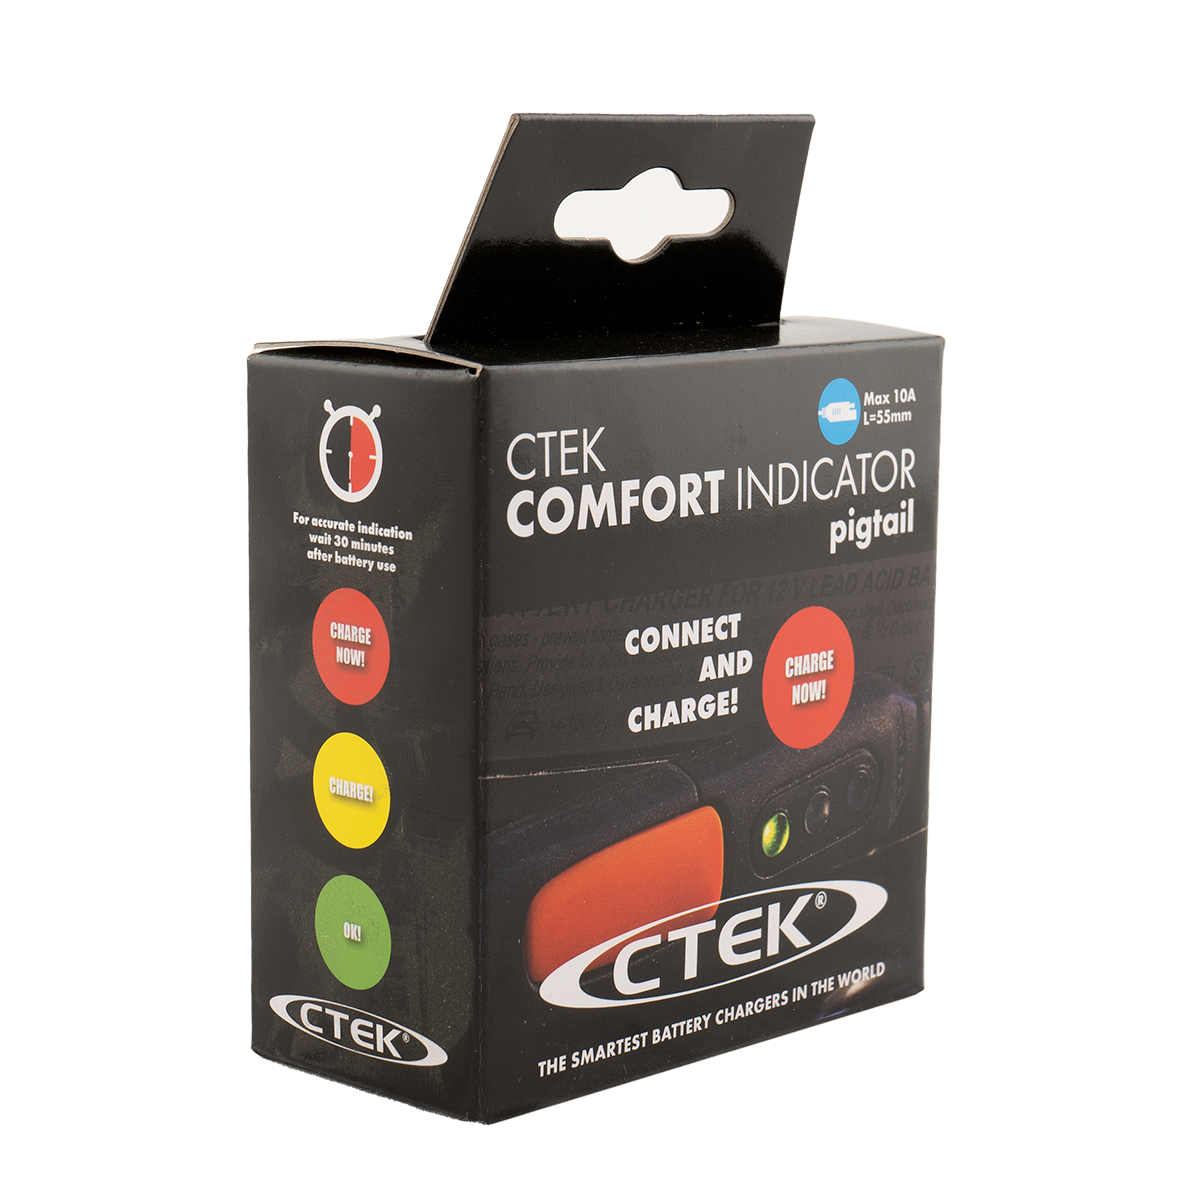 CTEK Comfort Indicator Pigtail Komfortanzeige für 12V Ladegeräte